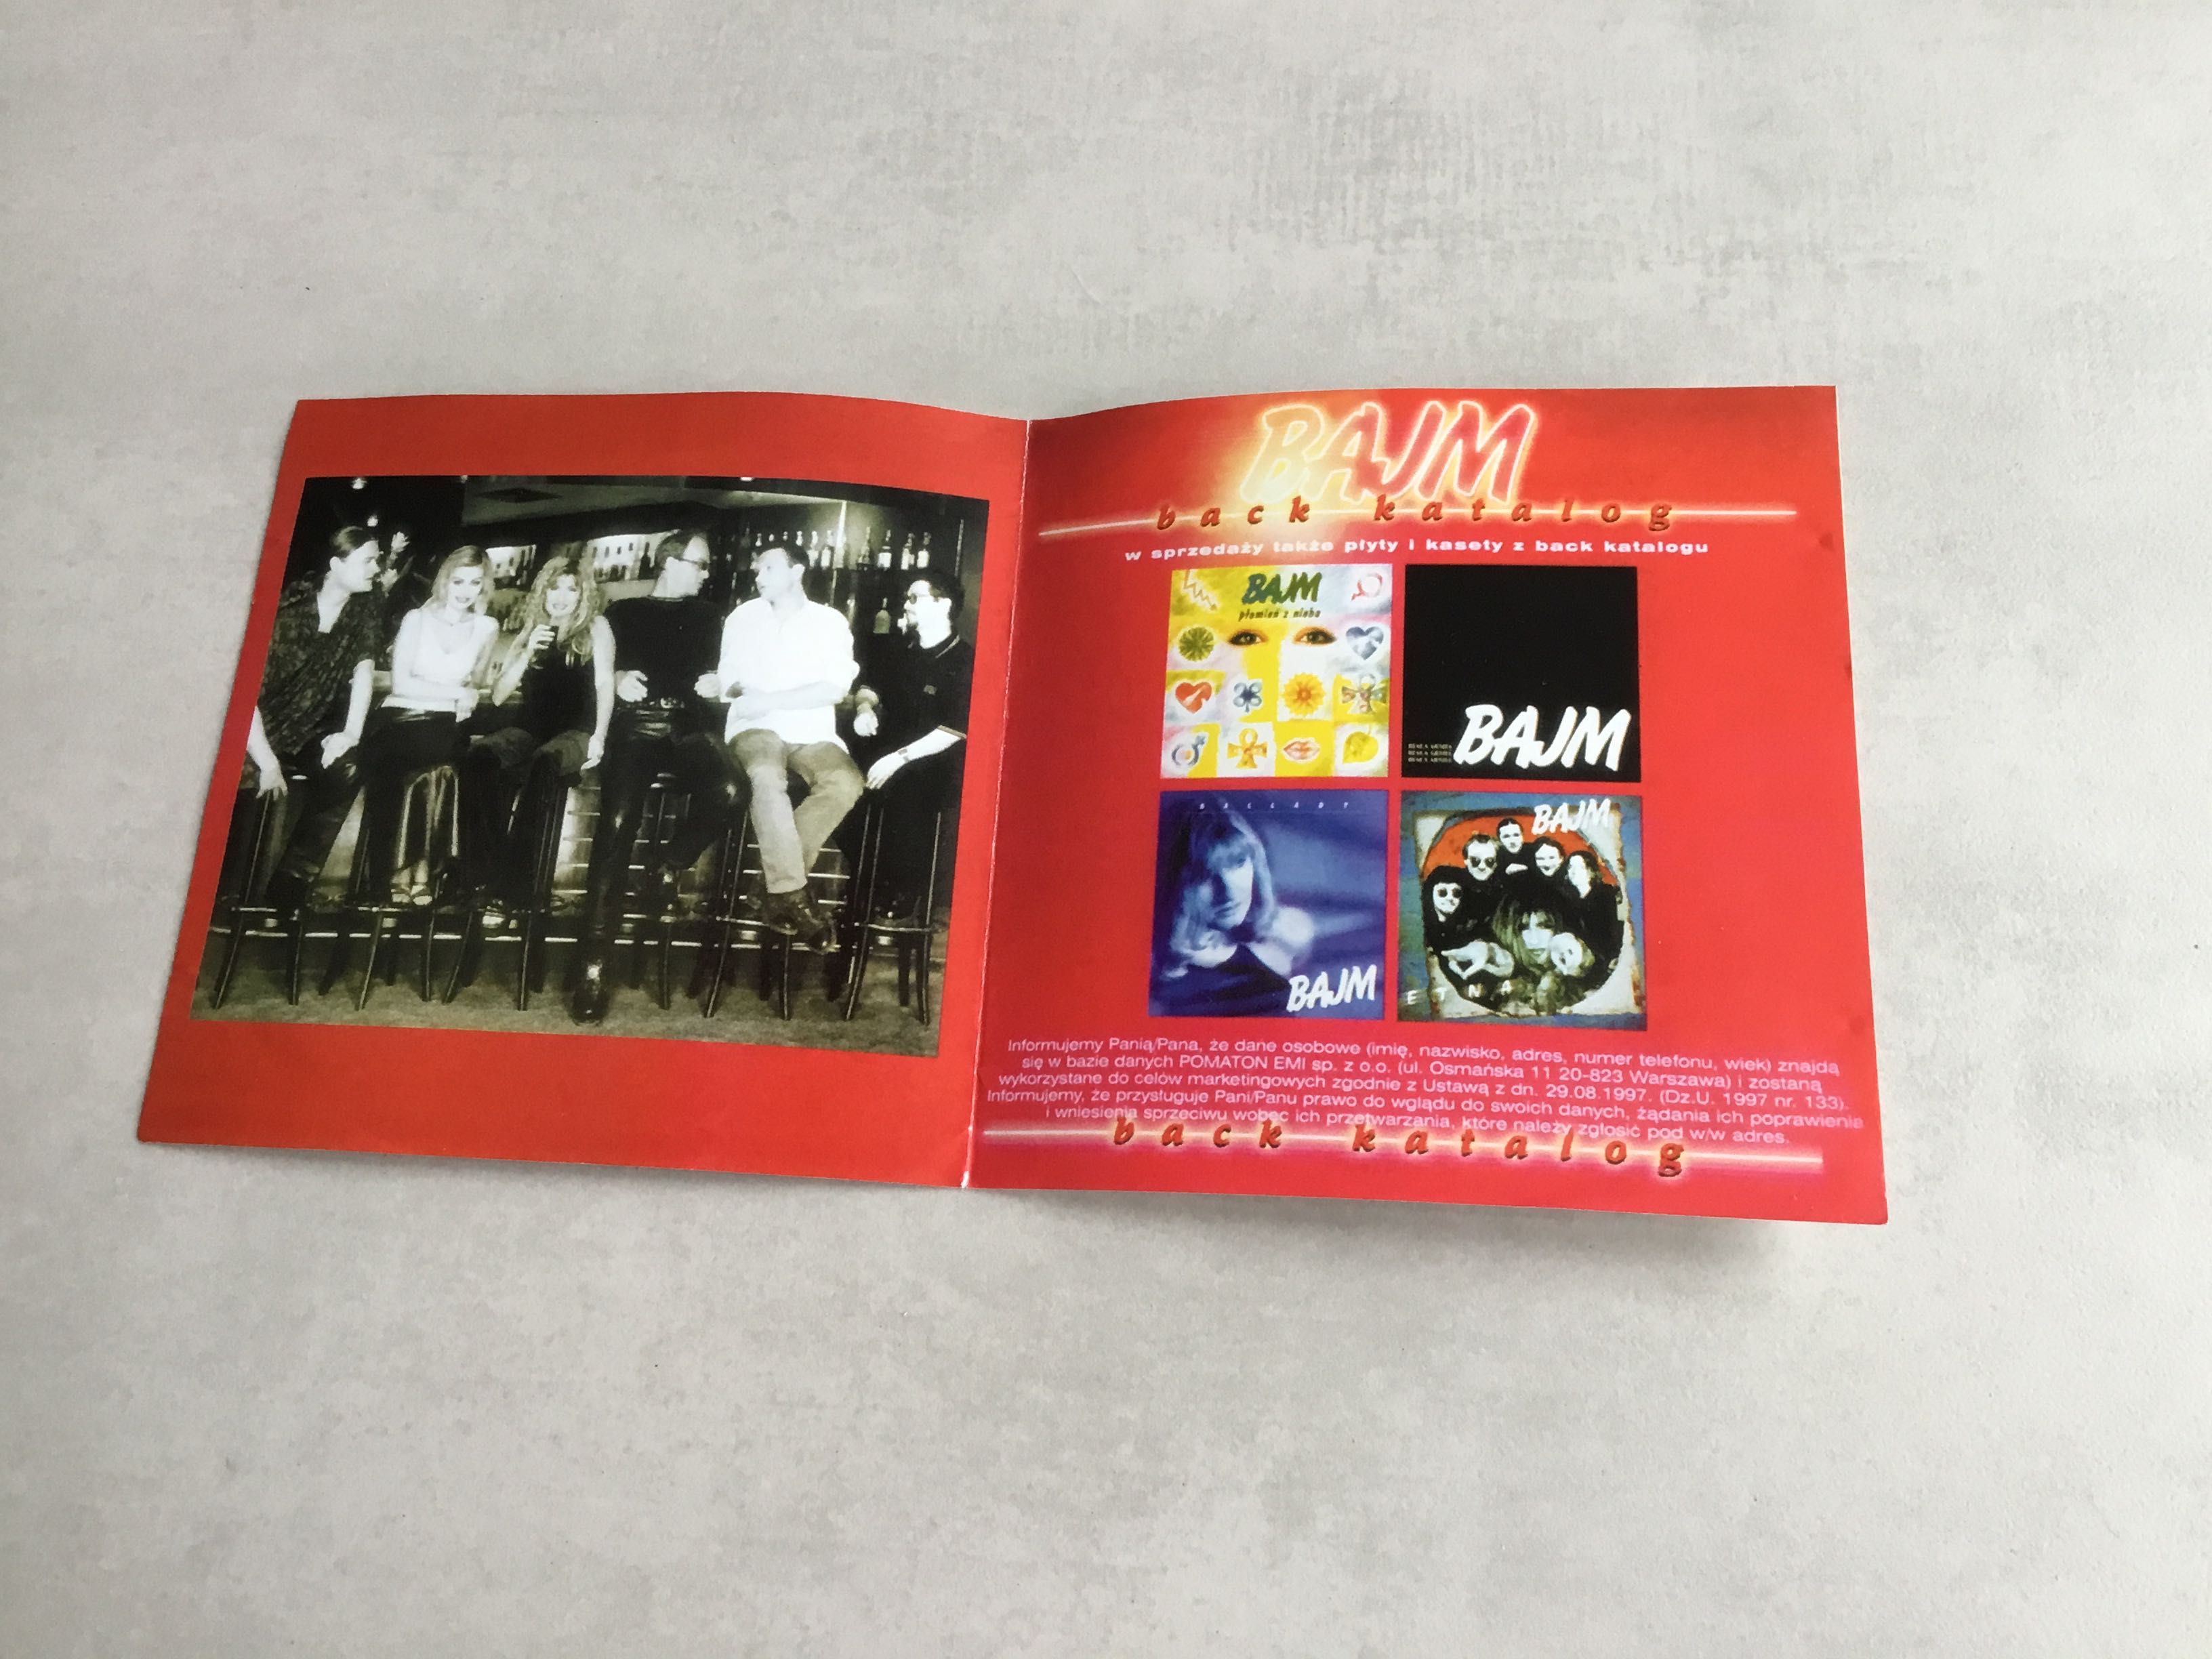 okładka do CD, z piosenekami zespołu „Bajm”